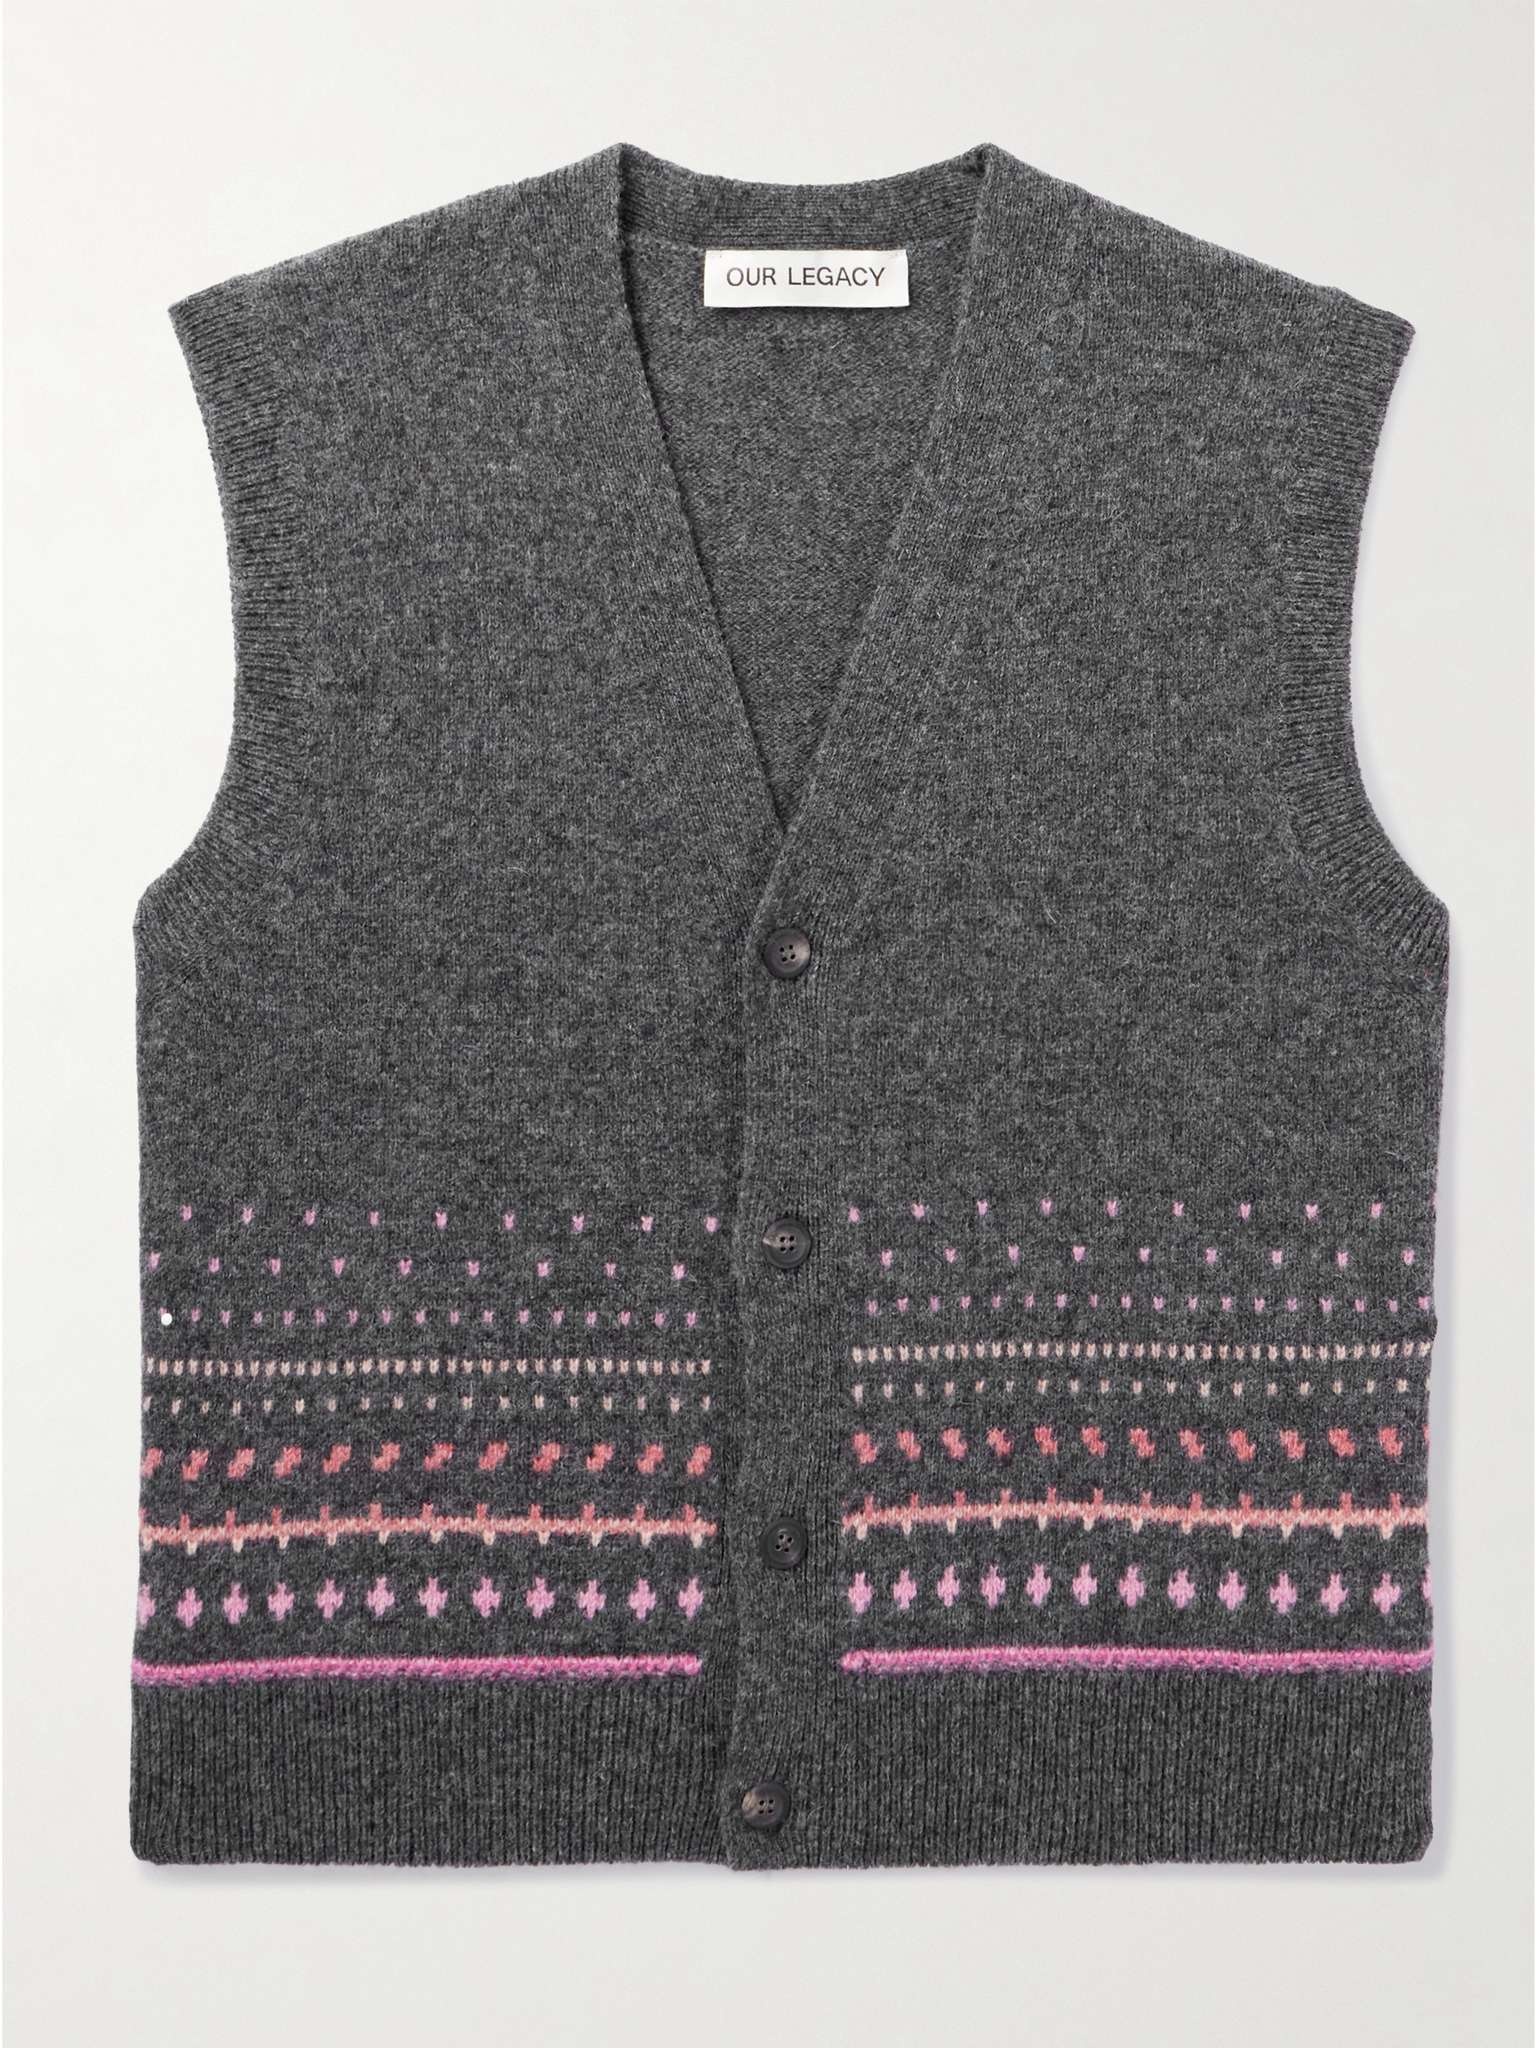 Rugrat Fair Isle Wool Sweater Vest - 1